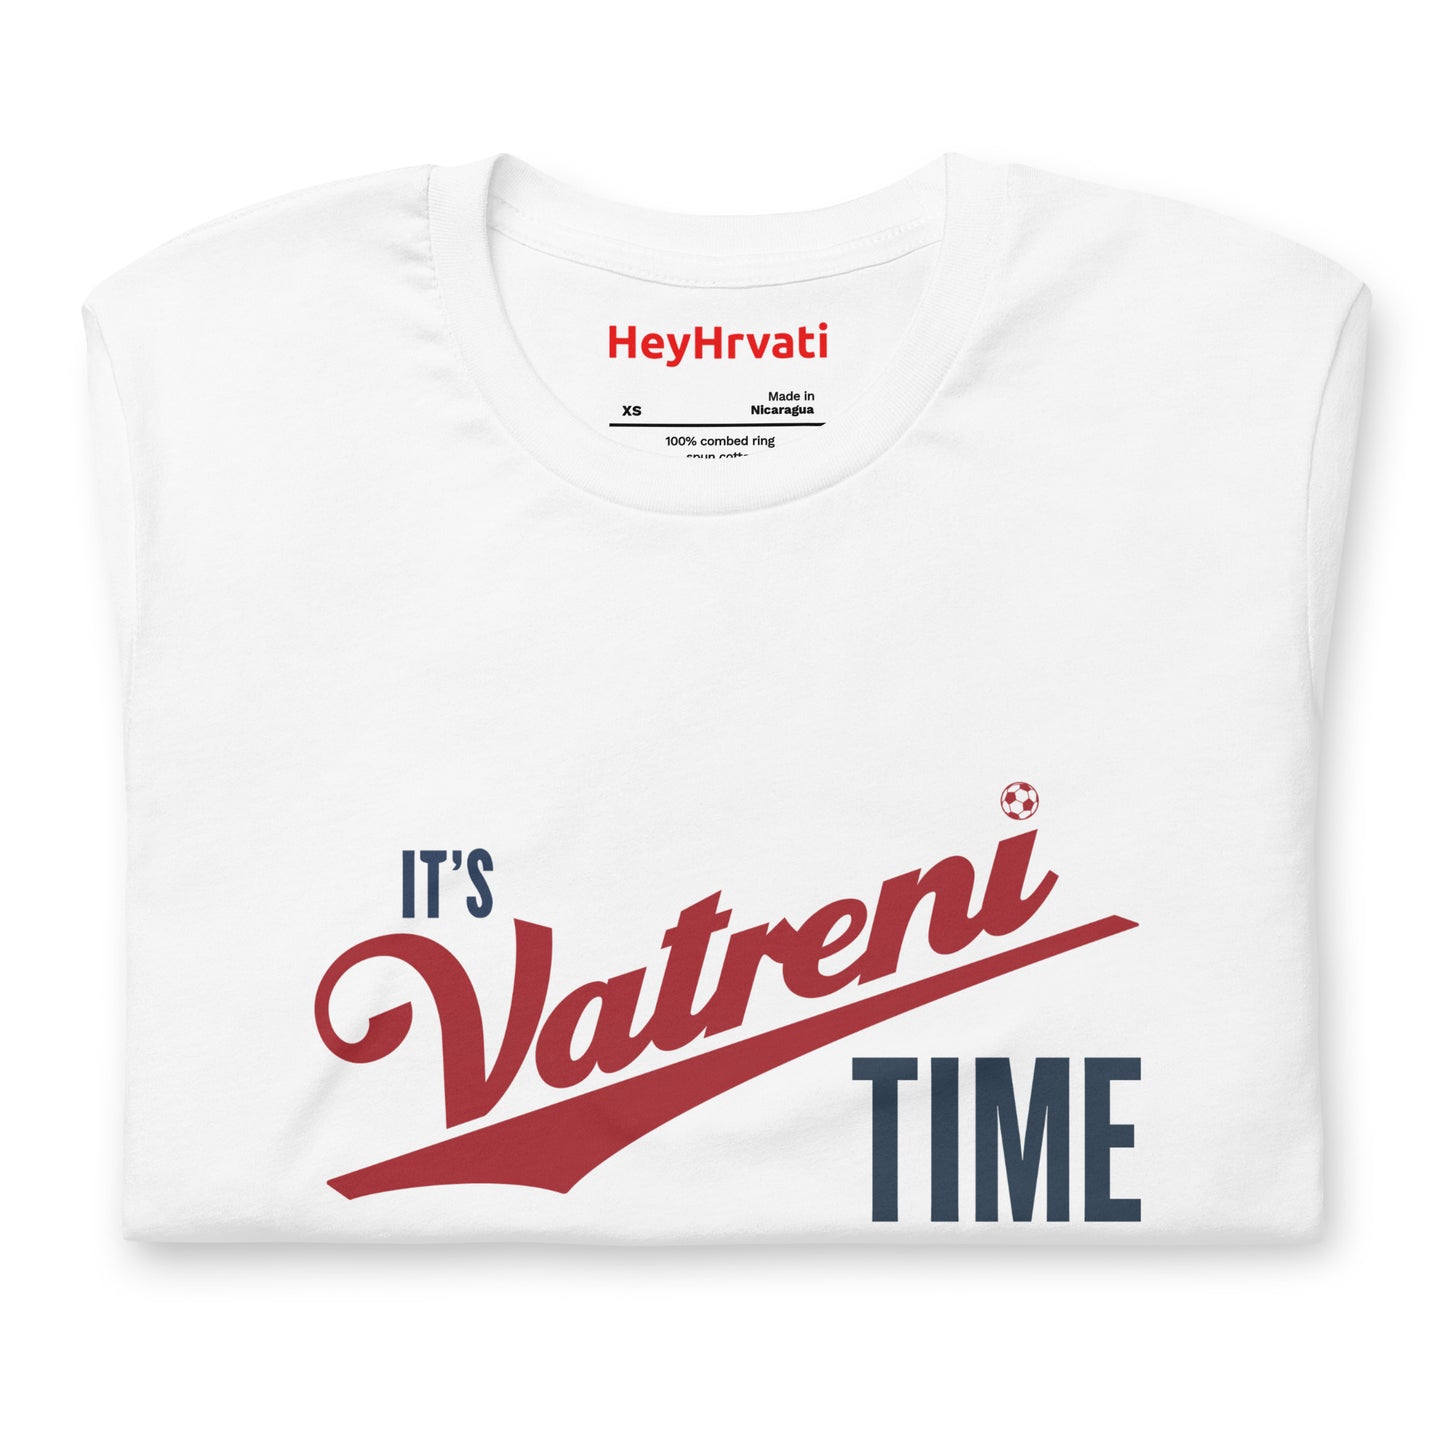 It's Vatreni Time T-Shirt